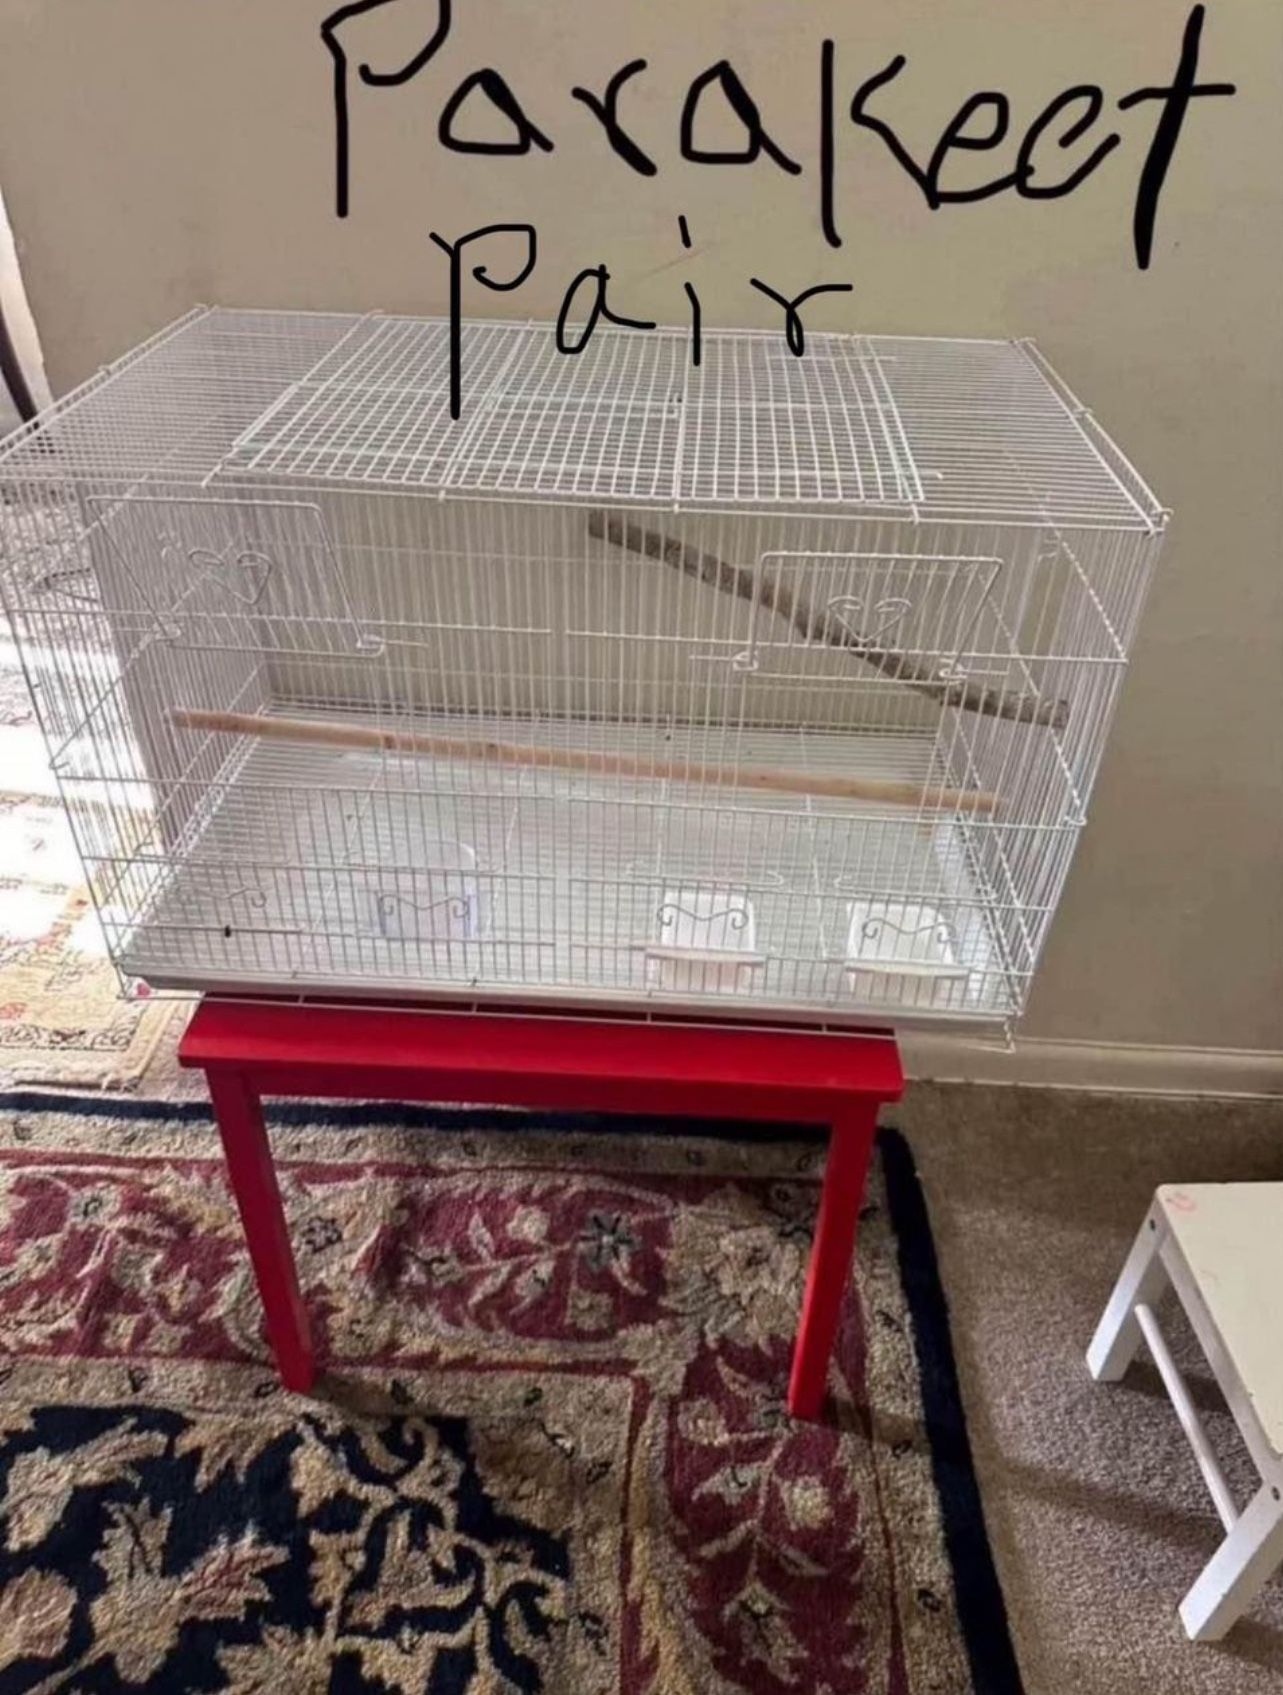 Parakeet Cage